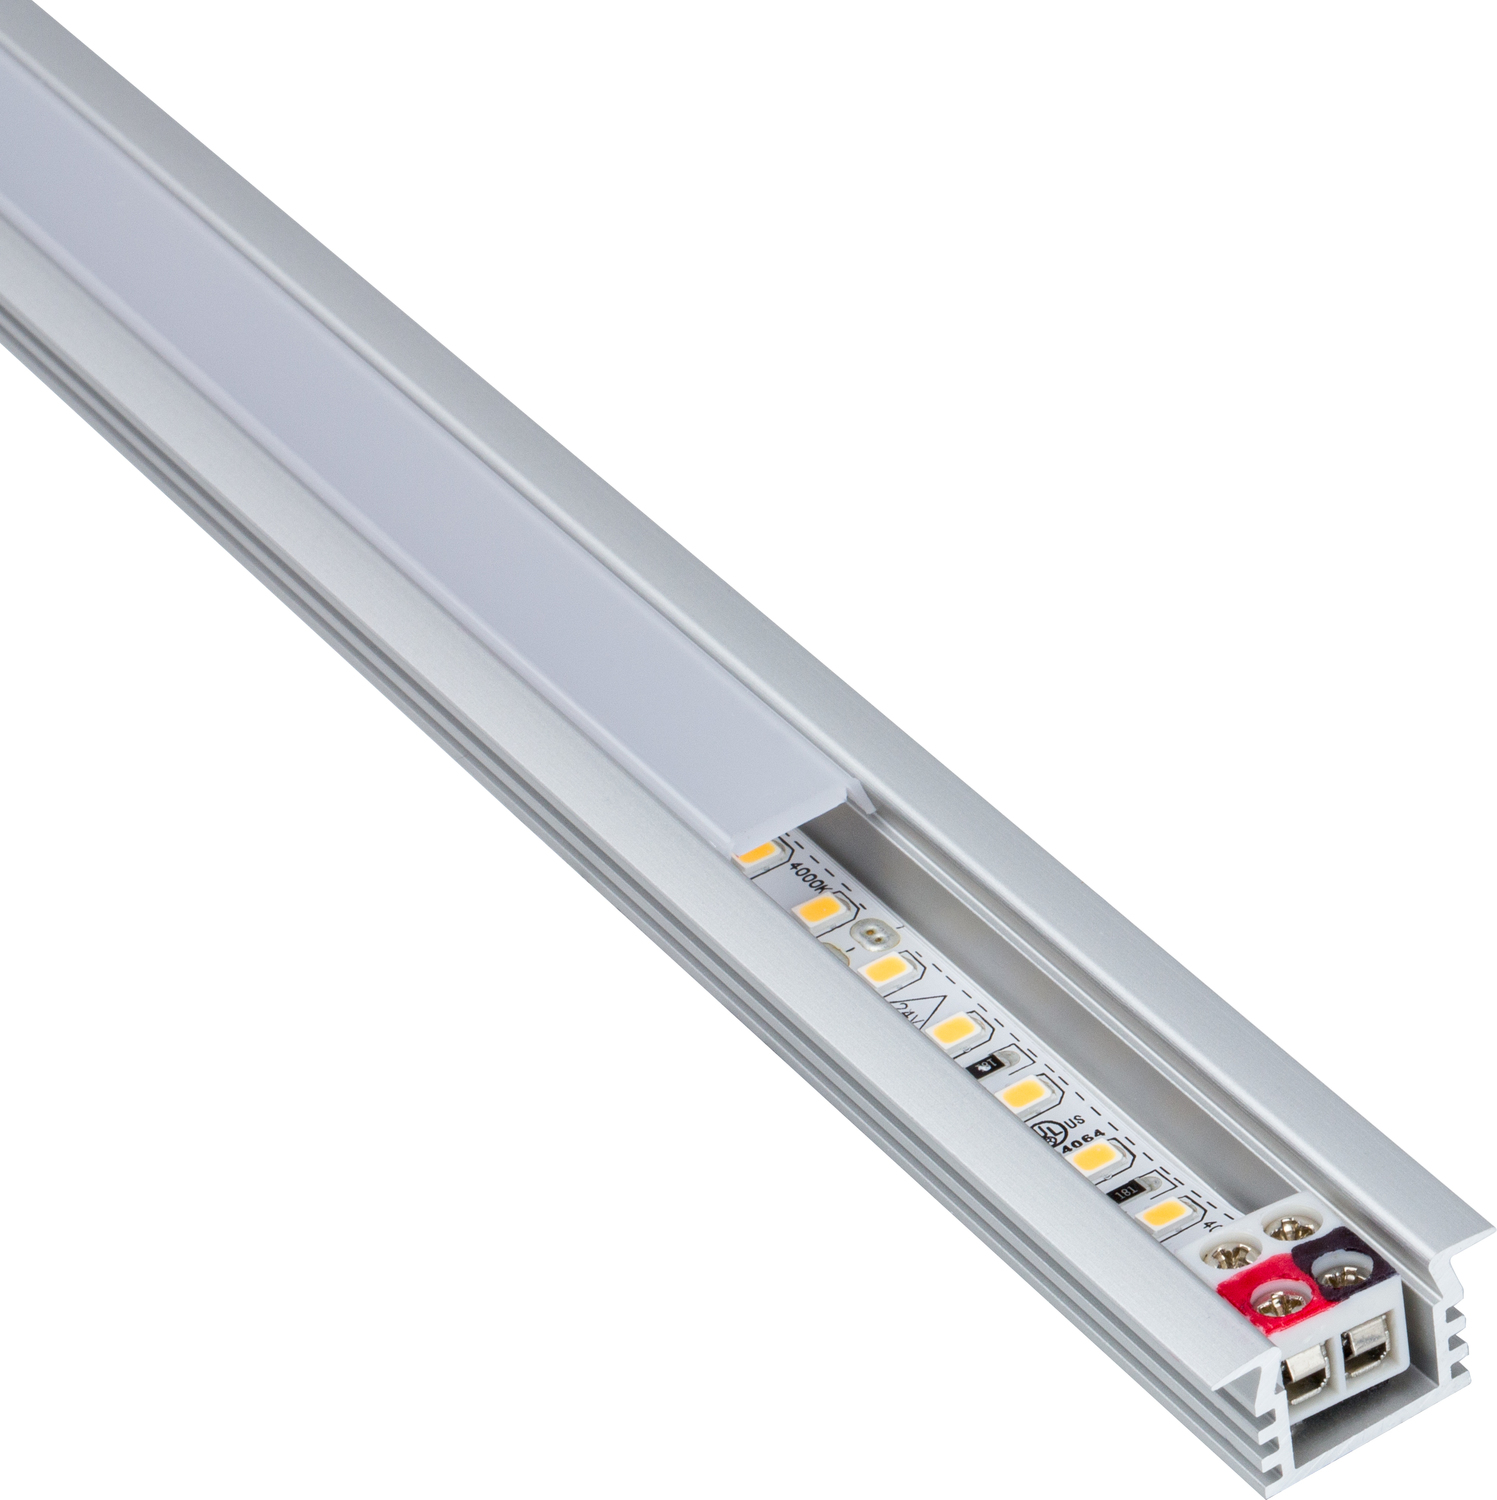 high end under cabinet lighting Task Lighting Linear Fixtures;Single-white Lighting Aluminum